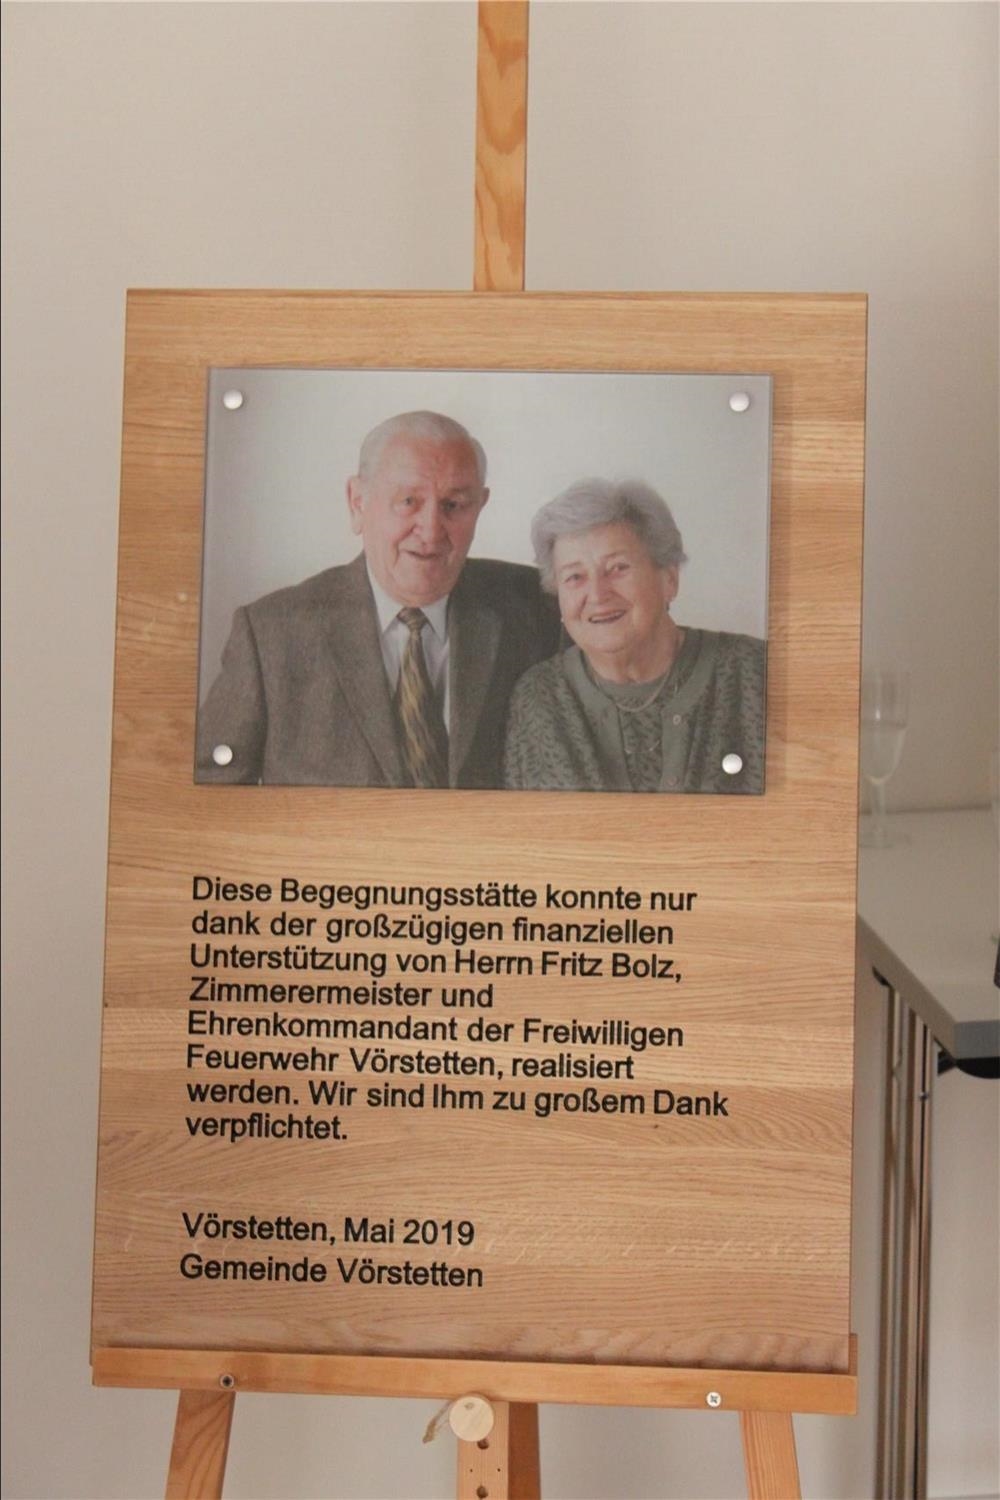 Die Gemeinde Vörstetten dankt Fritz Bolz und Familie für die großzügige Unterstützung (Julia Fuchs)